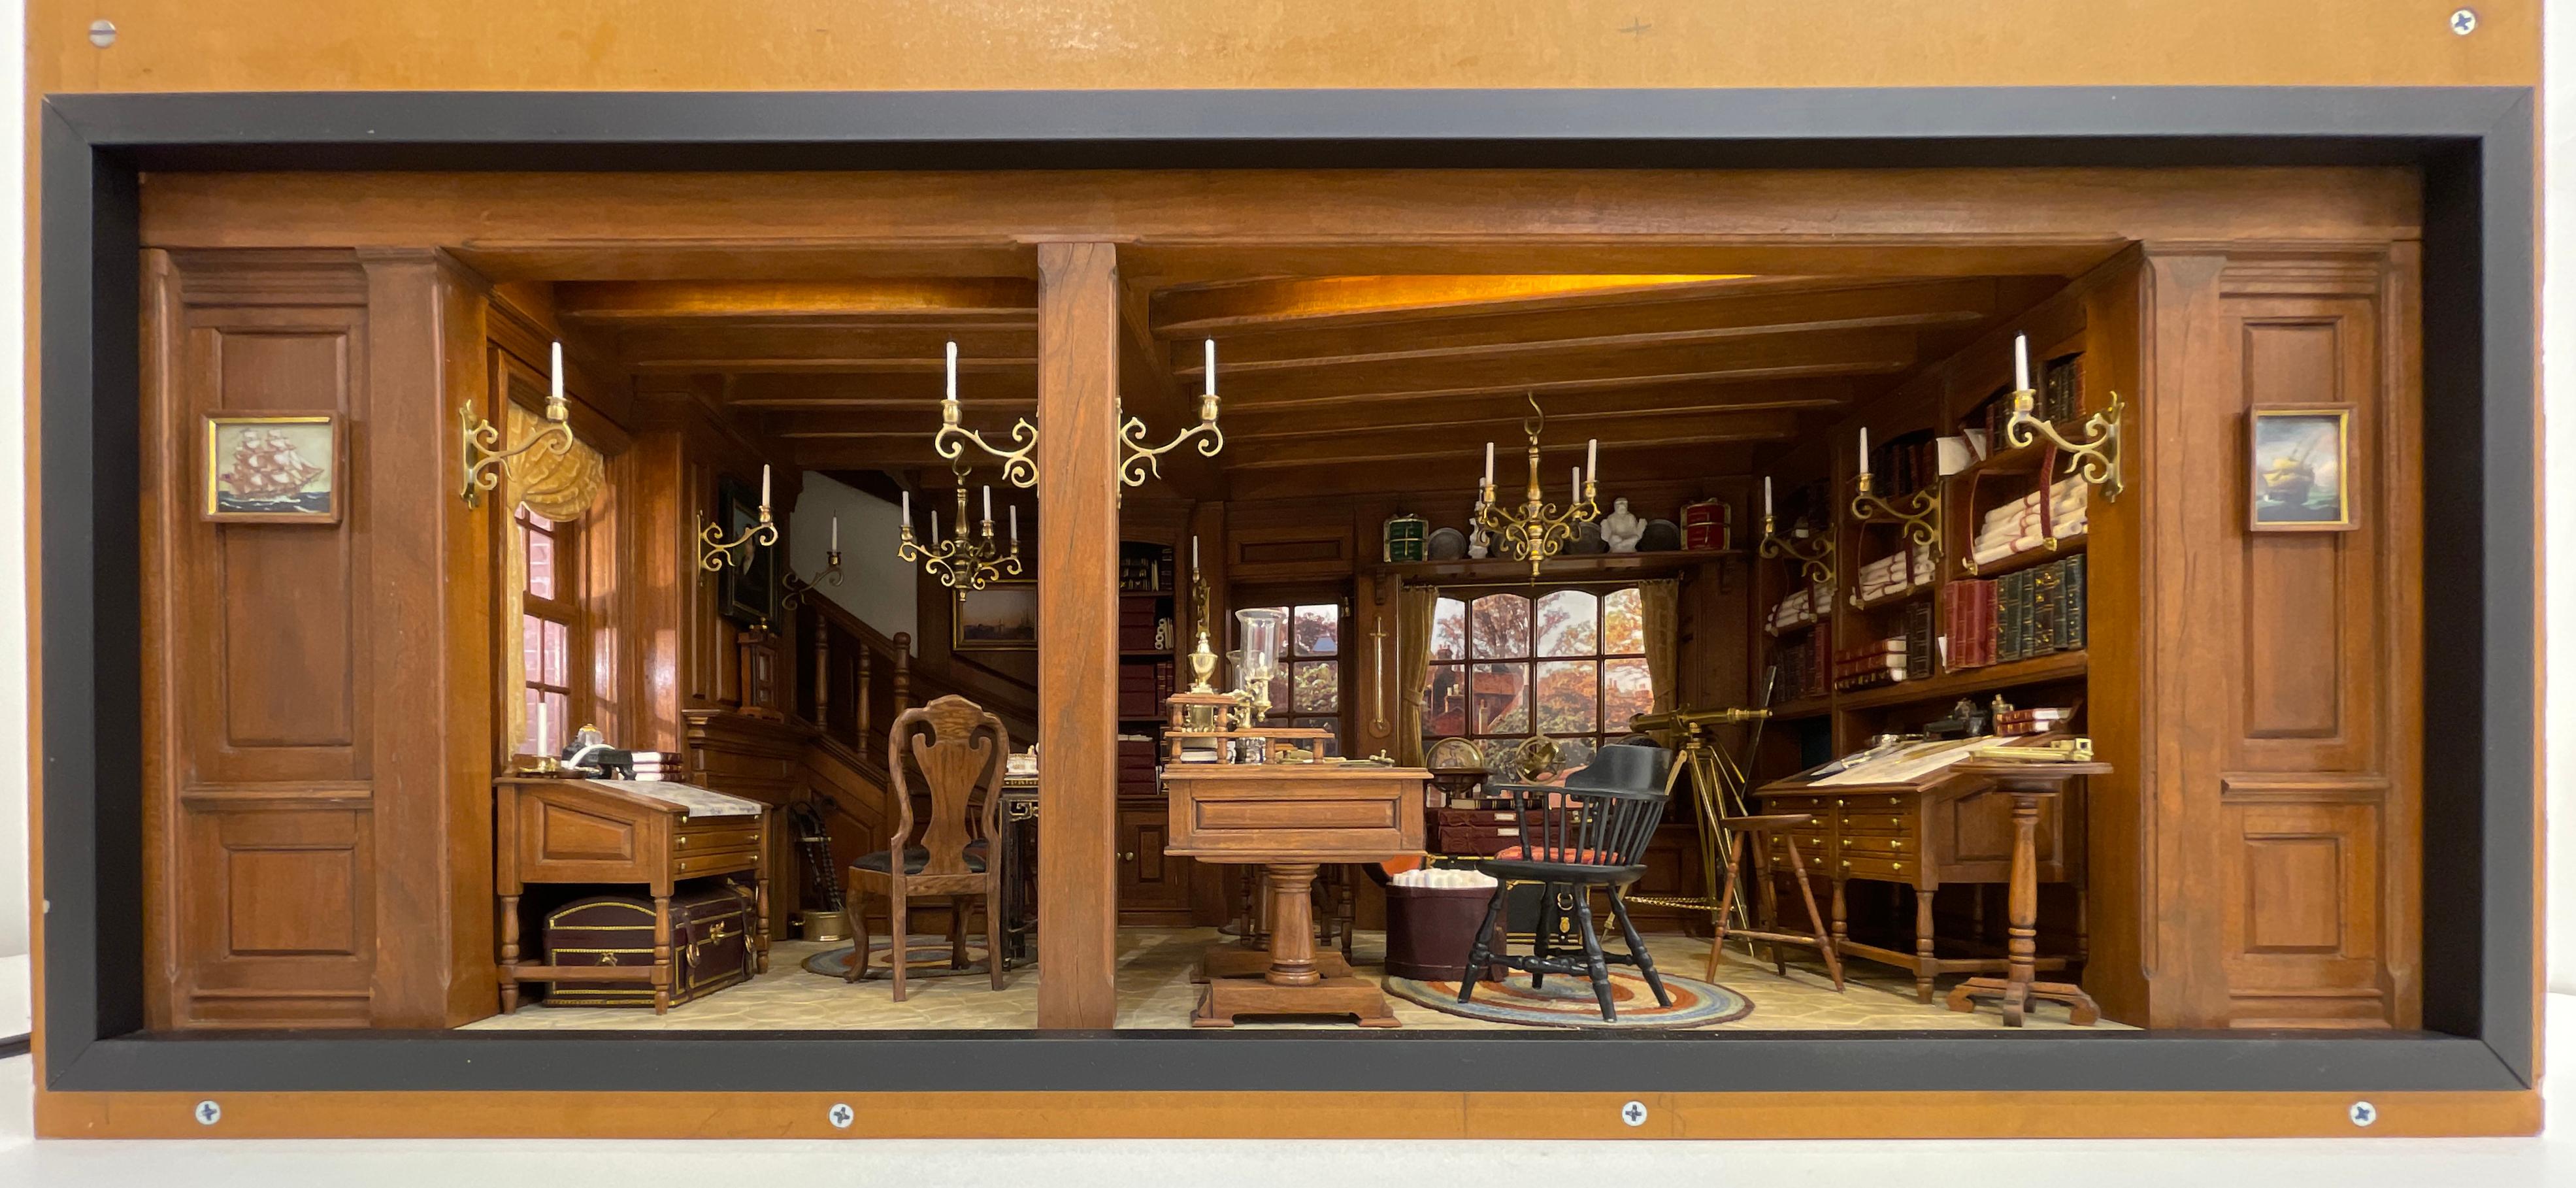 Büro eines Neuengland-Kartografen aus dem 18. Jahrhundert - Kupjack Studios Miniature Room – Sculpture von Henry 